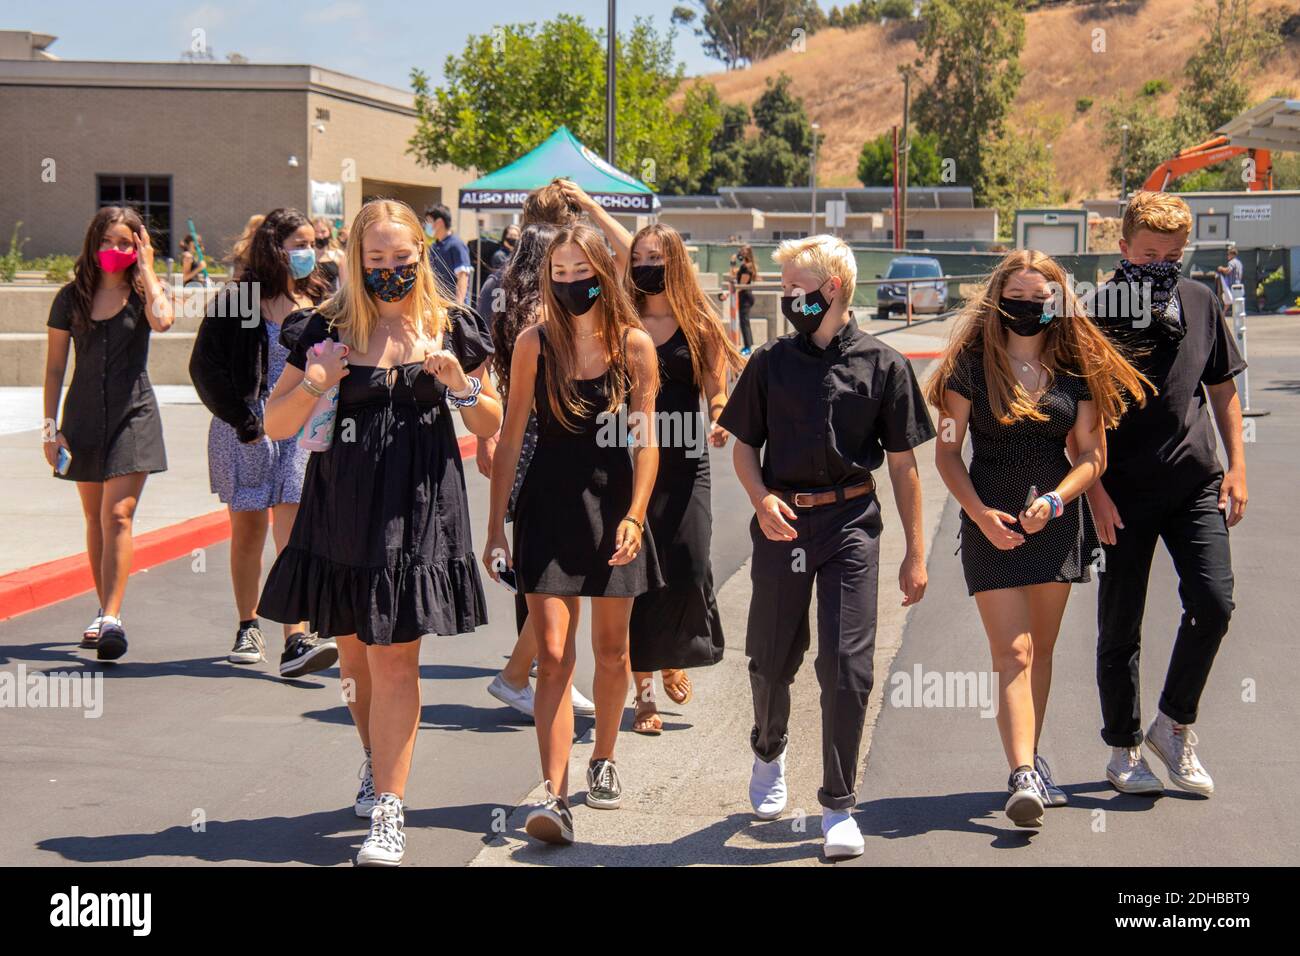 Vestiti in nero cerimoniale e indossando maschere per il viso a causa della pandemia del coronavirus, gli studenti di una scuola superiore della California meridionale arrivano per assistere WIT Foto Stock